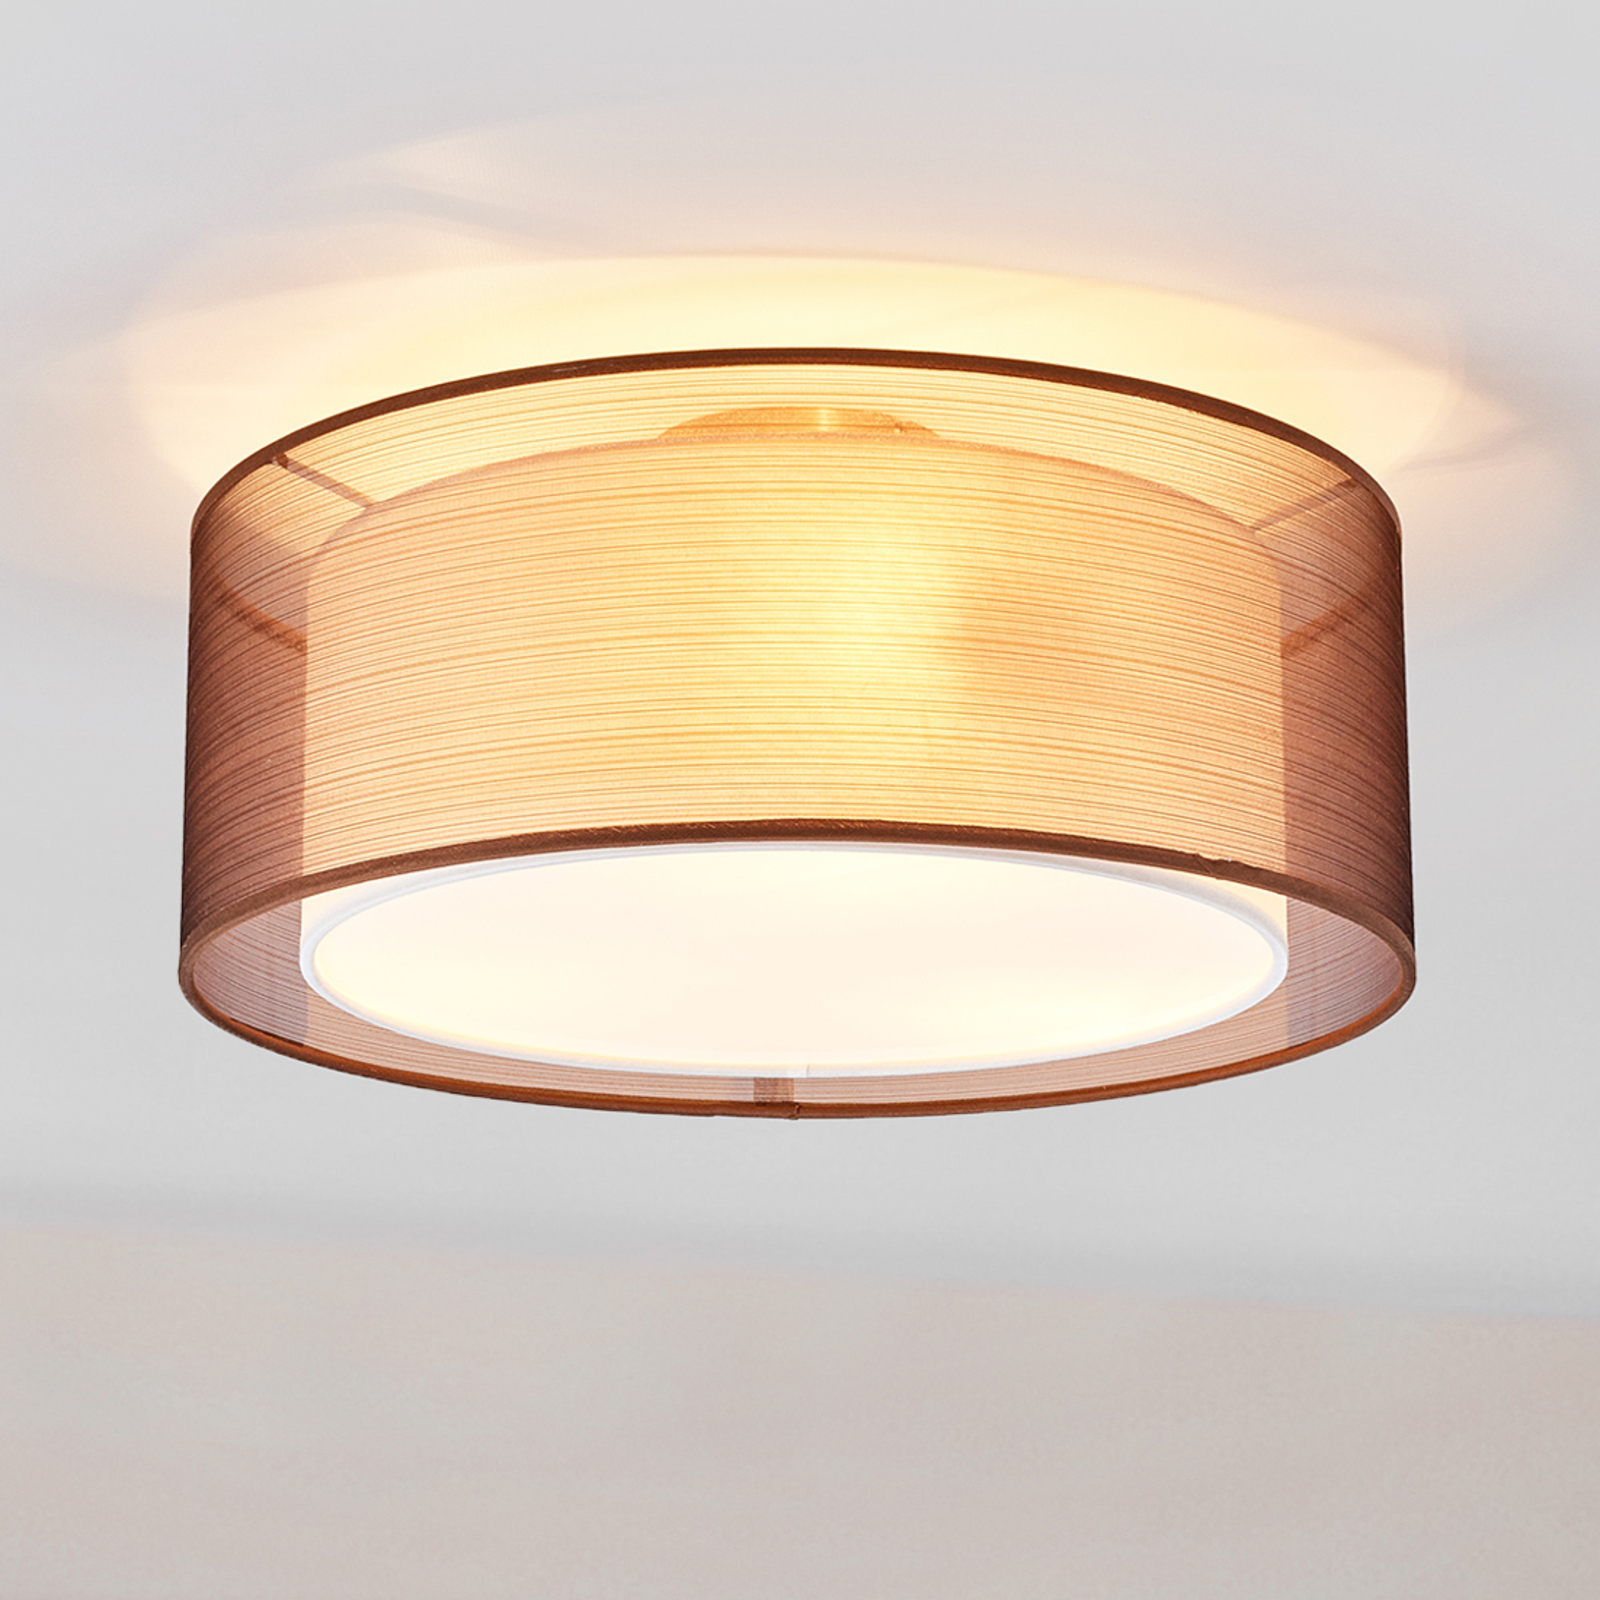 Brazowa Materialowa Lampa Sufitowa Nica Lampy Pl